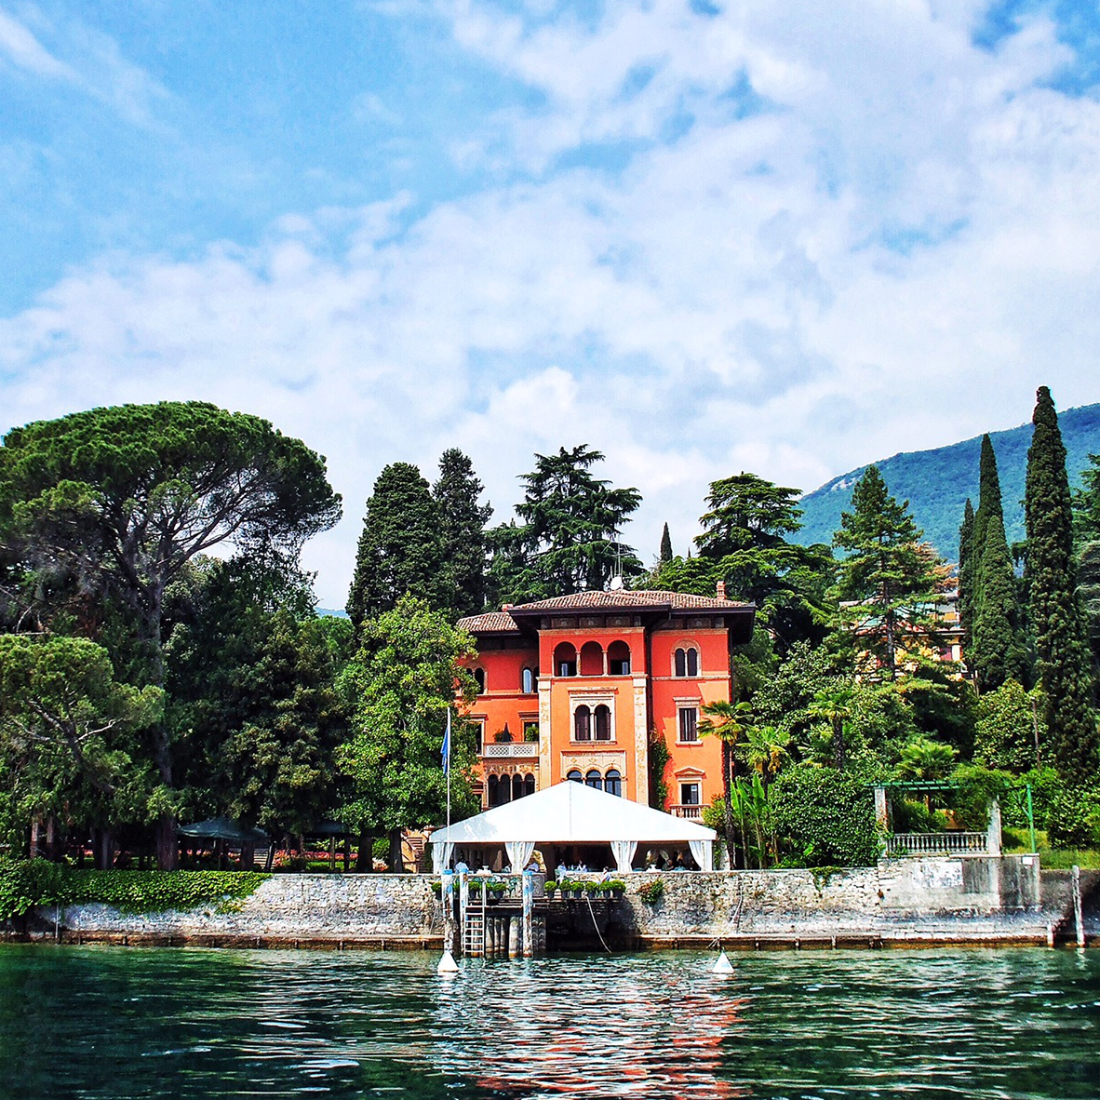 All-day boat tour of Lake Garda